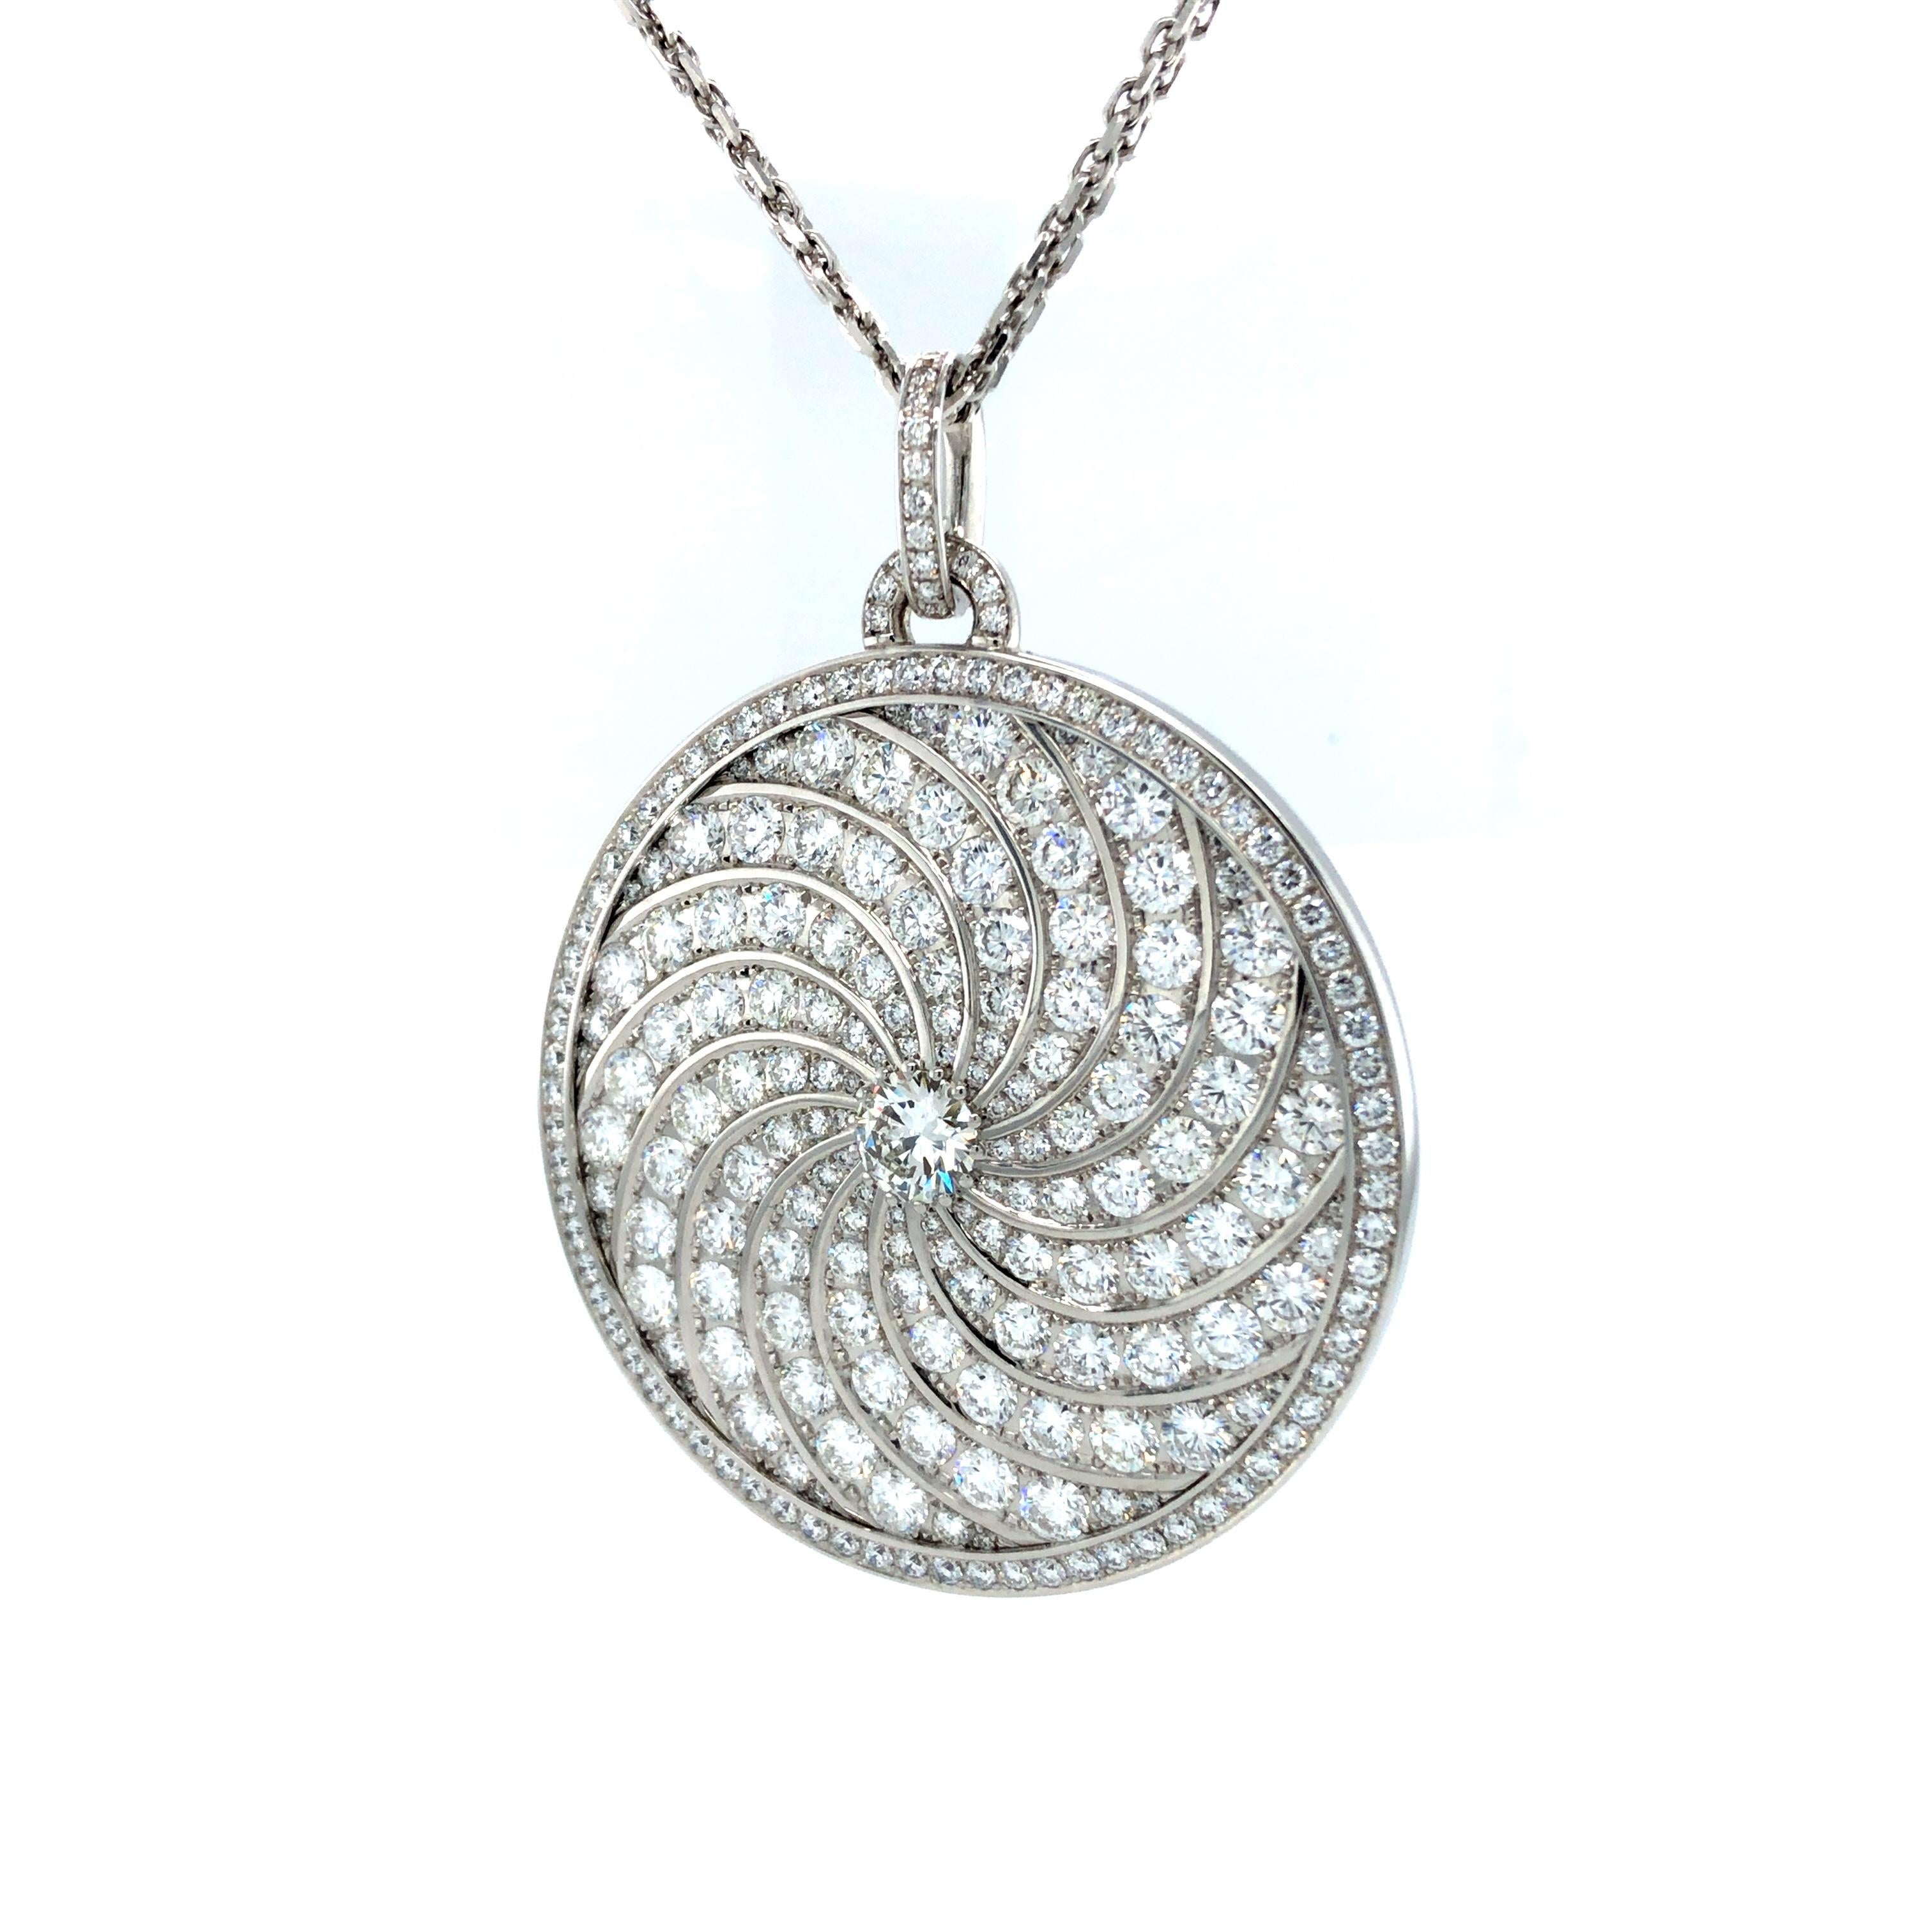 Round Pendant Necklace - 18k White Gold - 247 Pavé Diamonds 14.06 ct GVS - 48mm For Sale 3